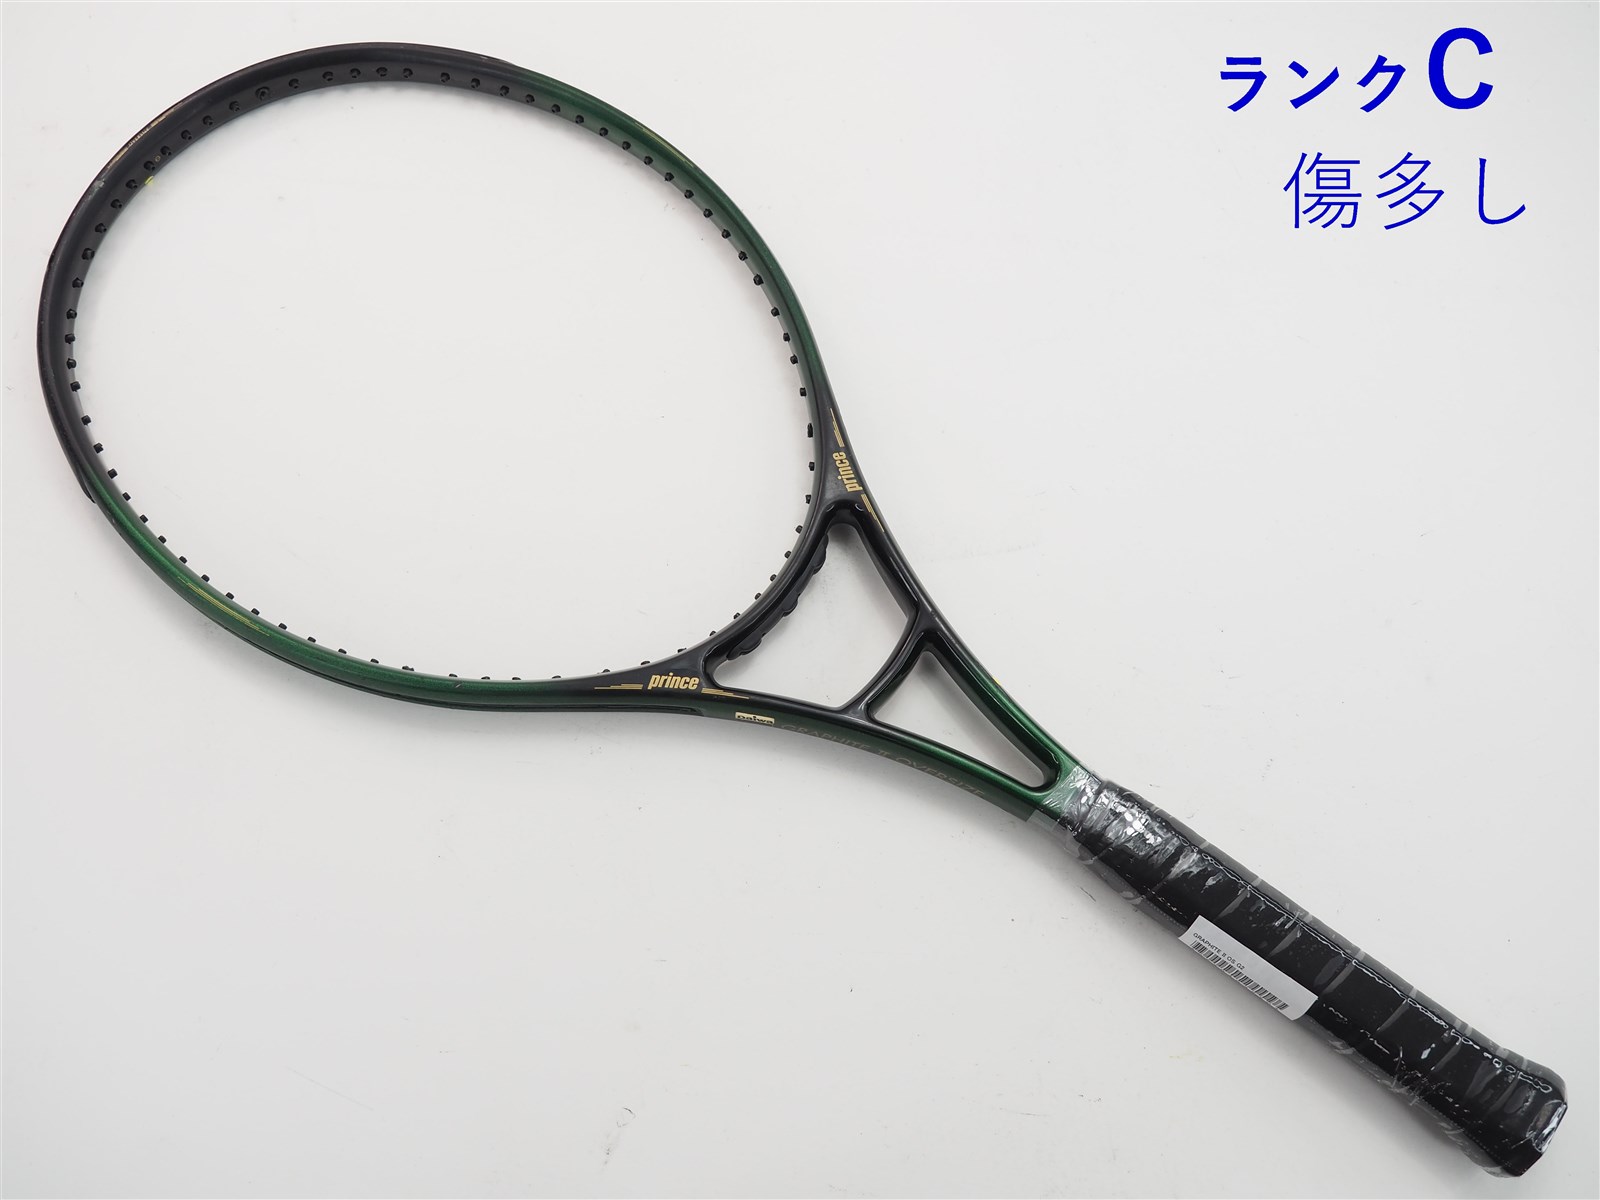 ラケット(硬式用)PRINCE GRAPHITE II OVERSIZE テニスラケット